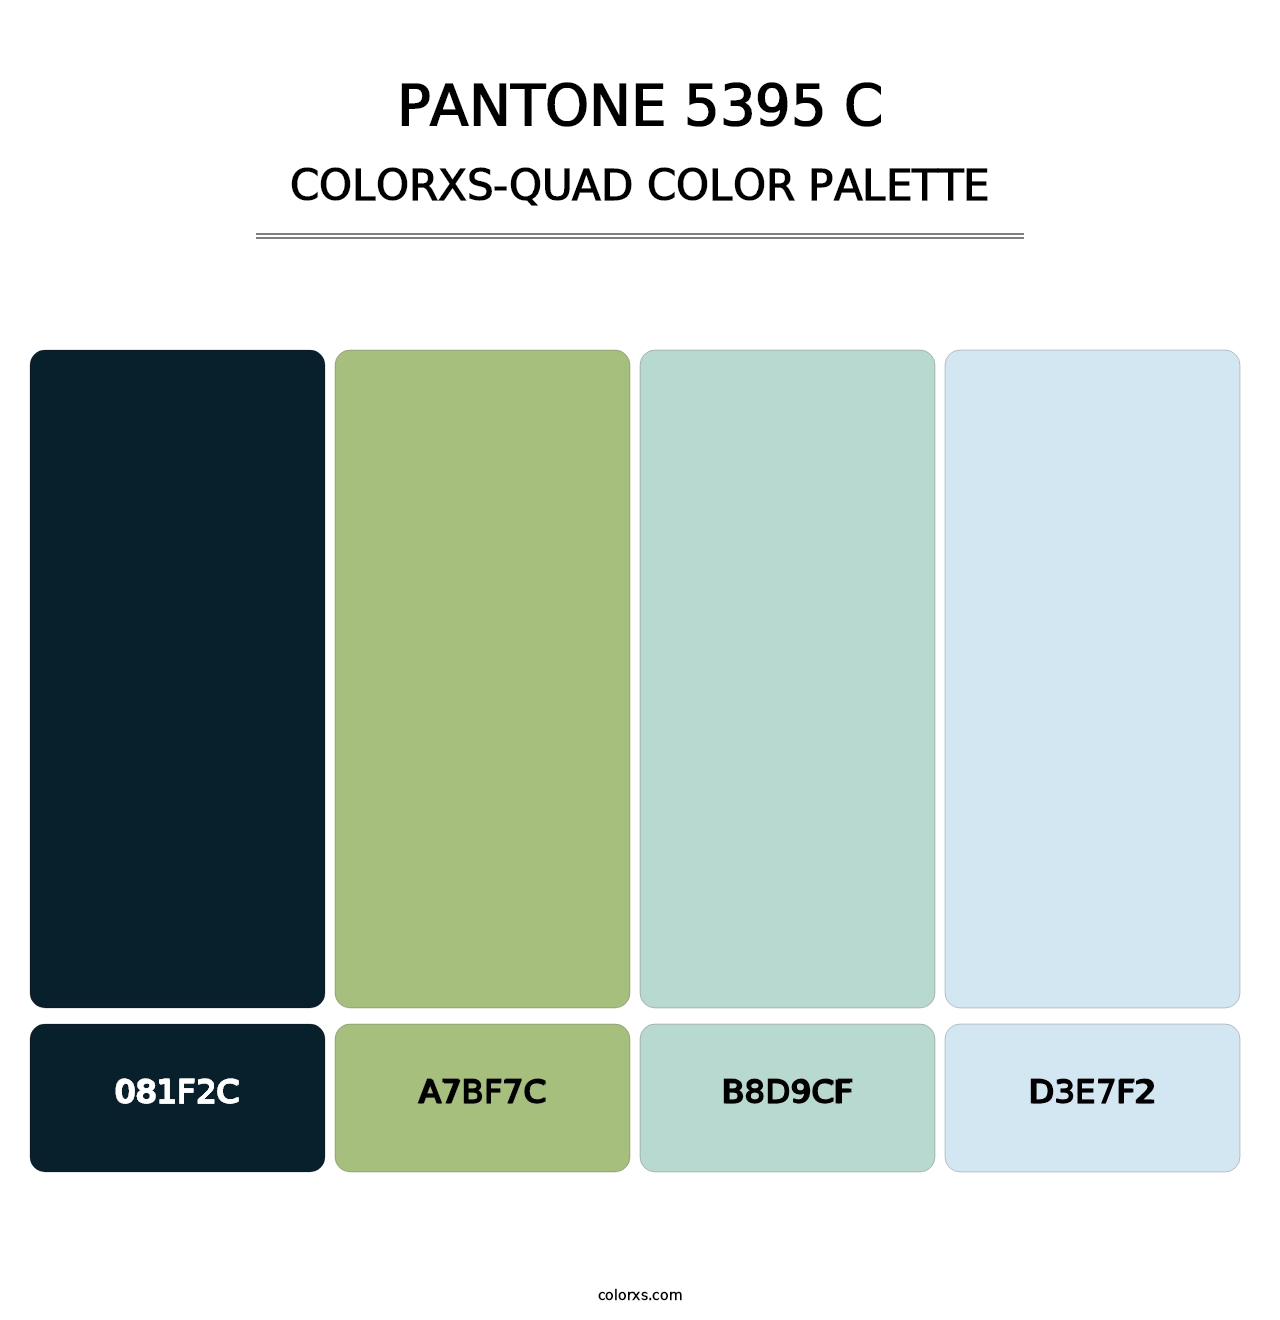 PANTONE 5395 C - Colorxs Quad Palette